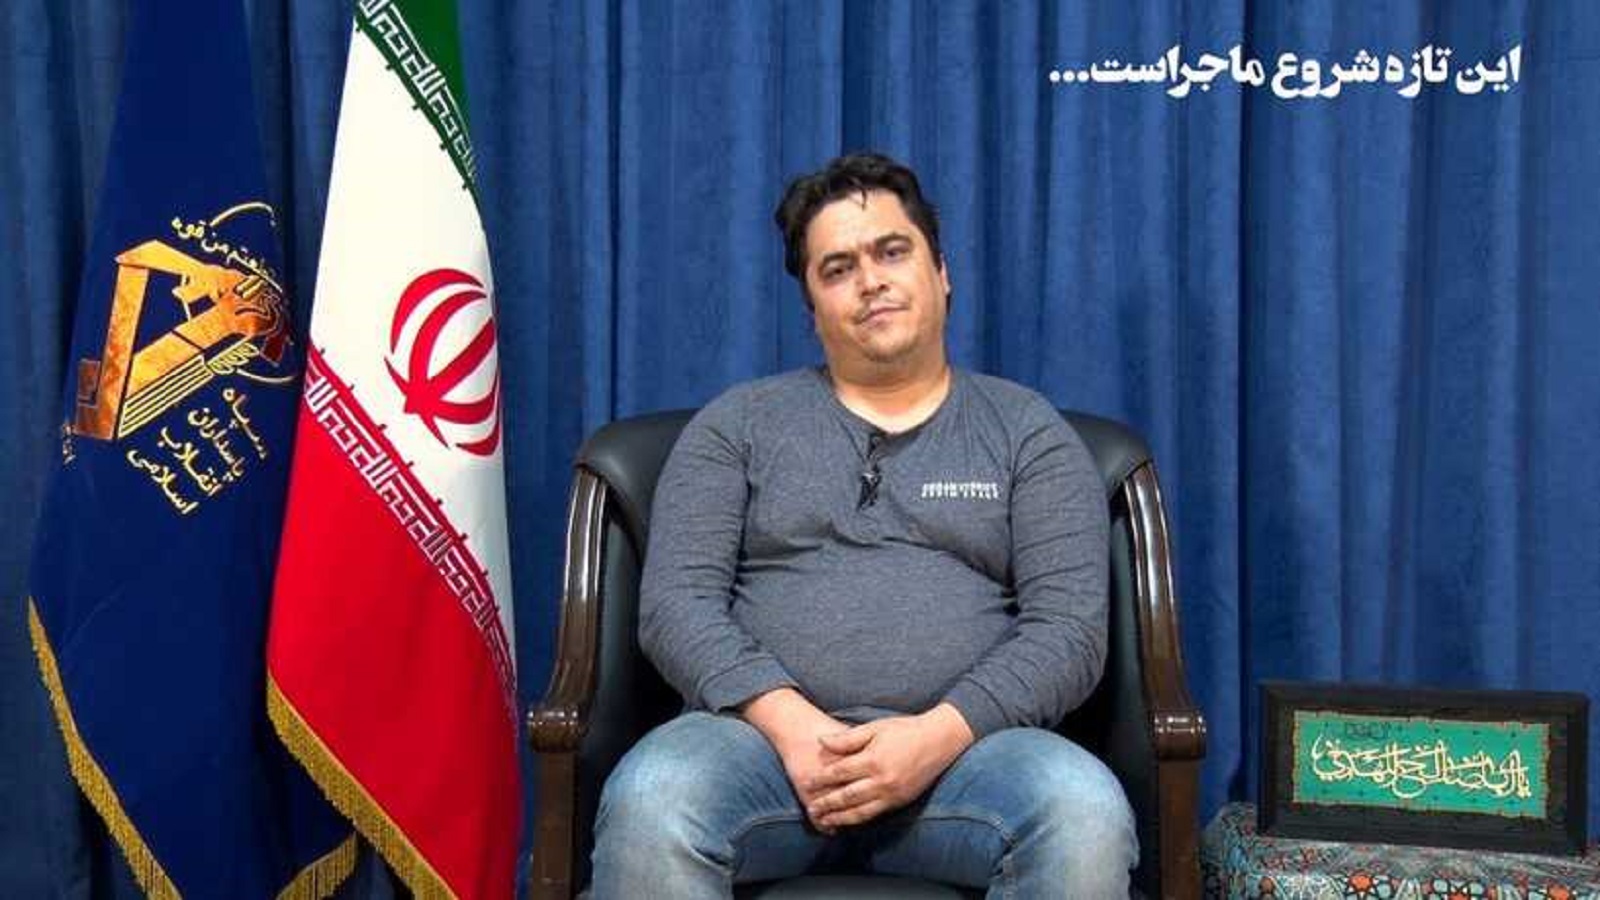 إيران: الإعدام للصحافي روح الله زم